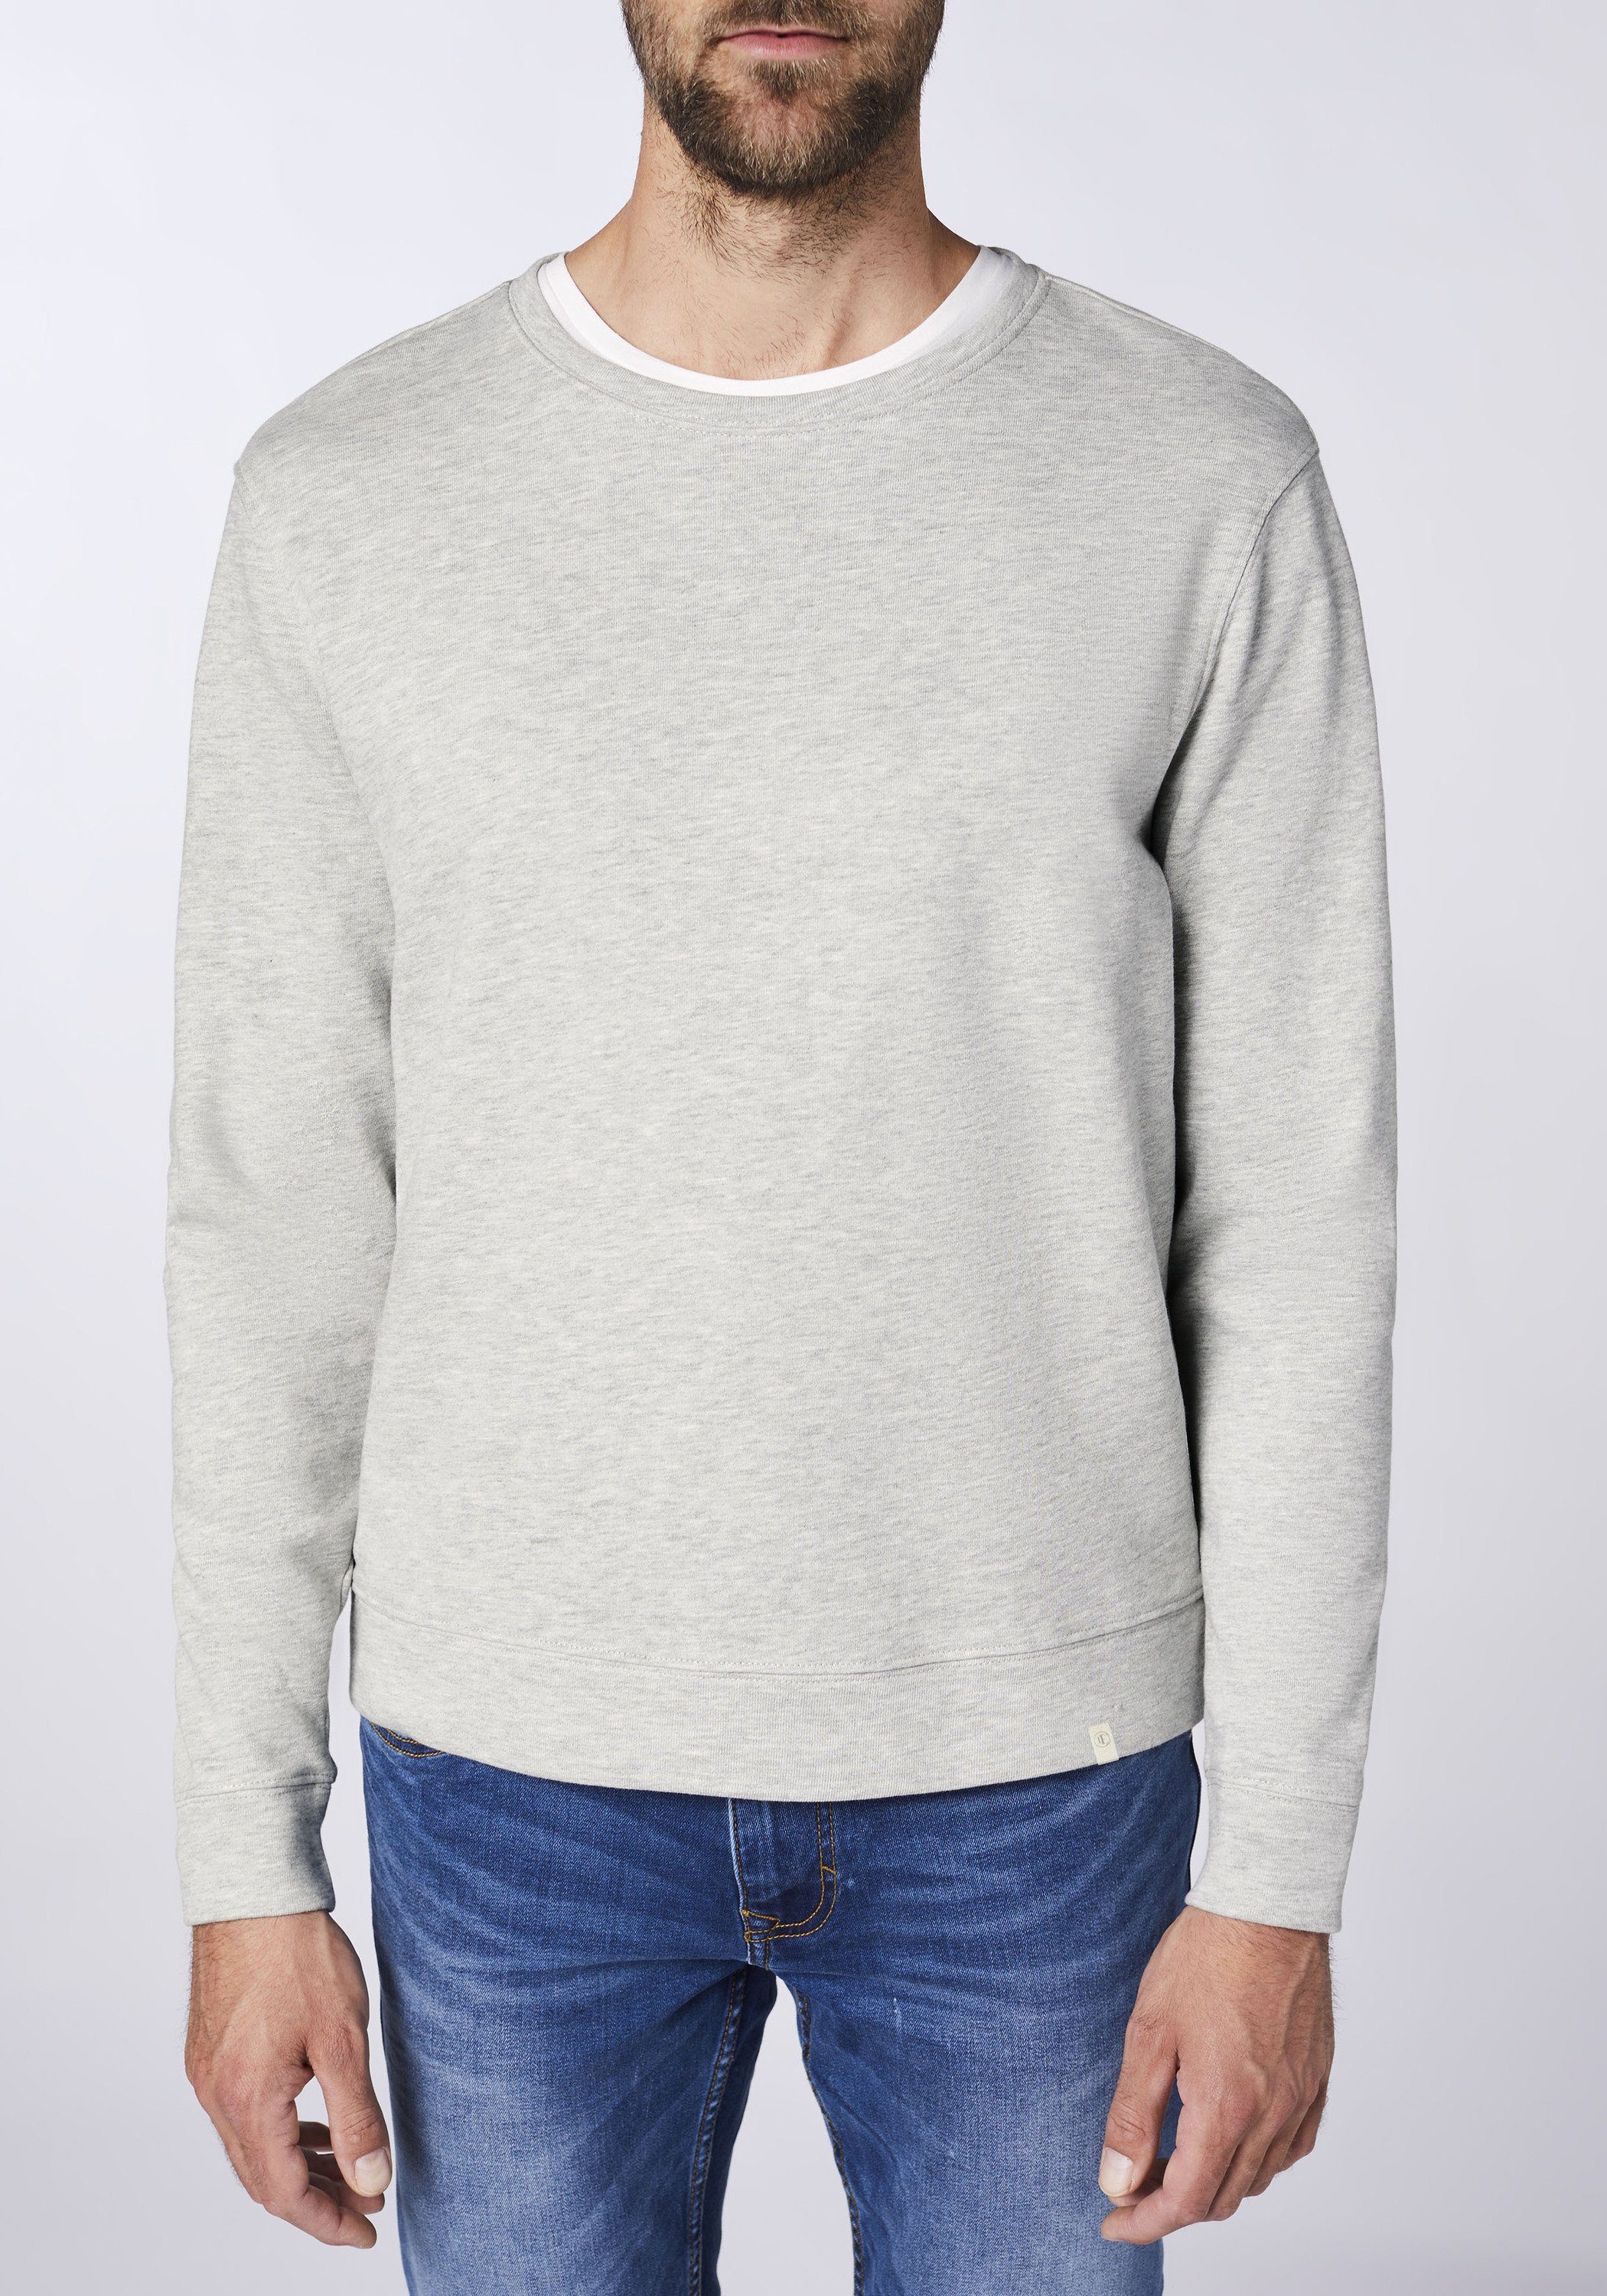 cleanen 72 Design Grey Fatto im Sweatshirt Light Detto